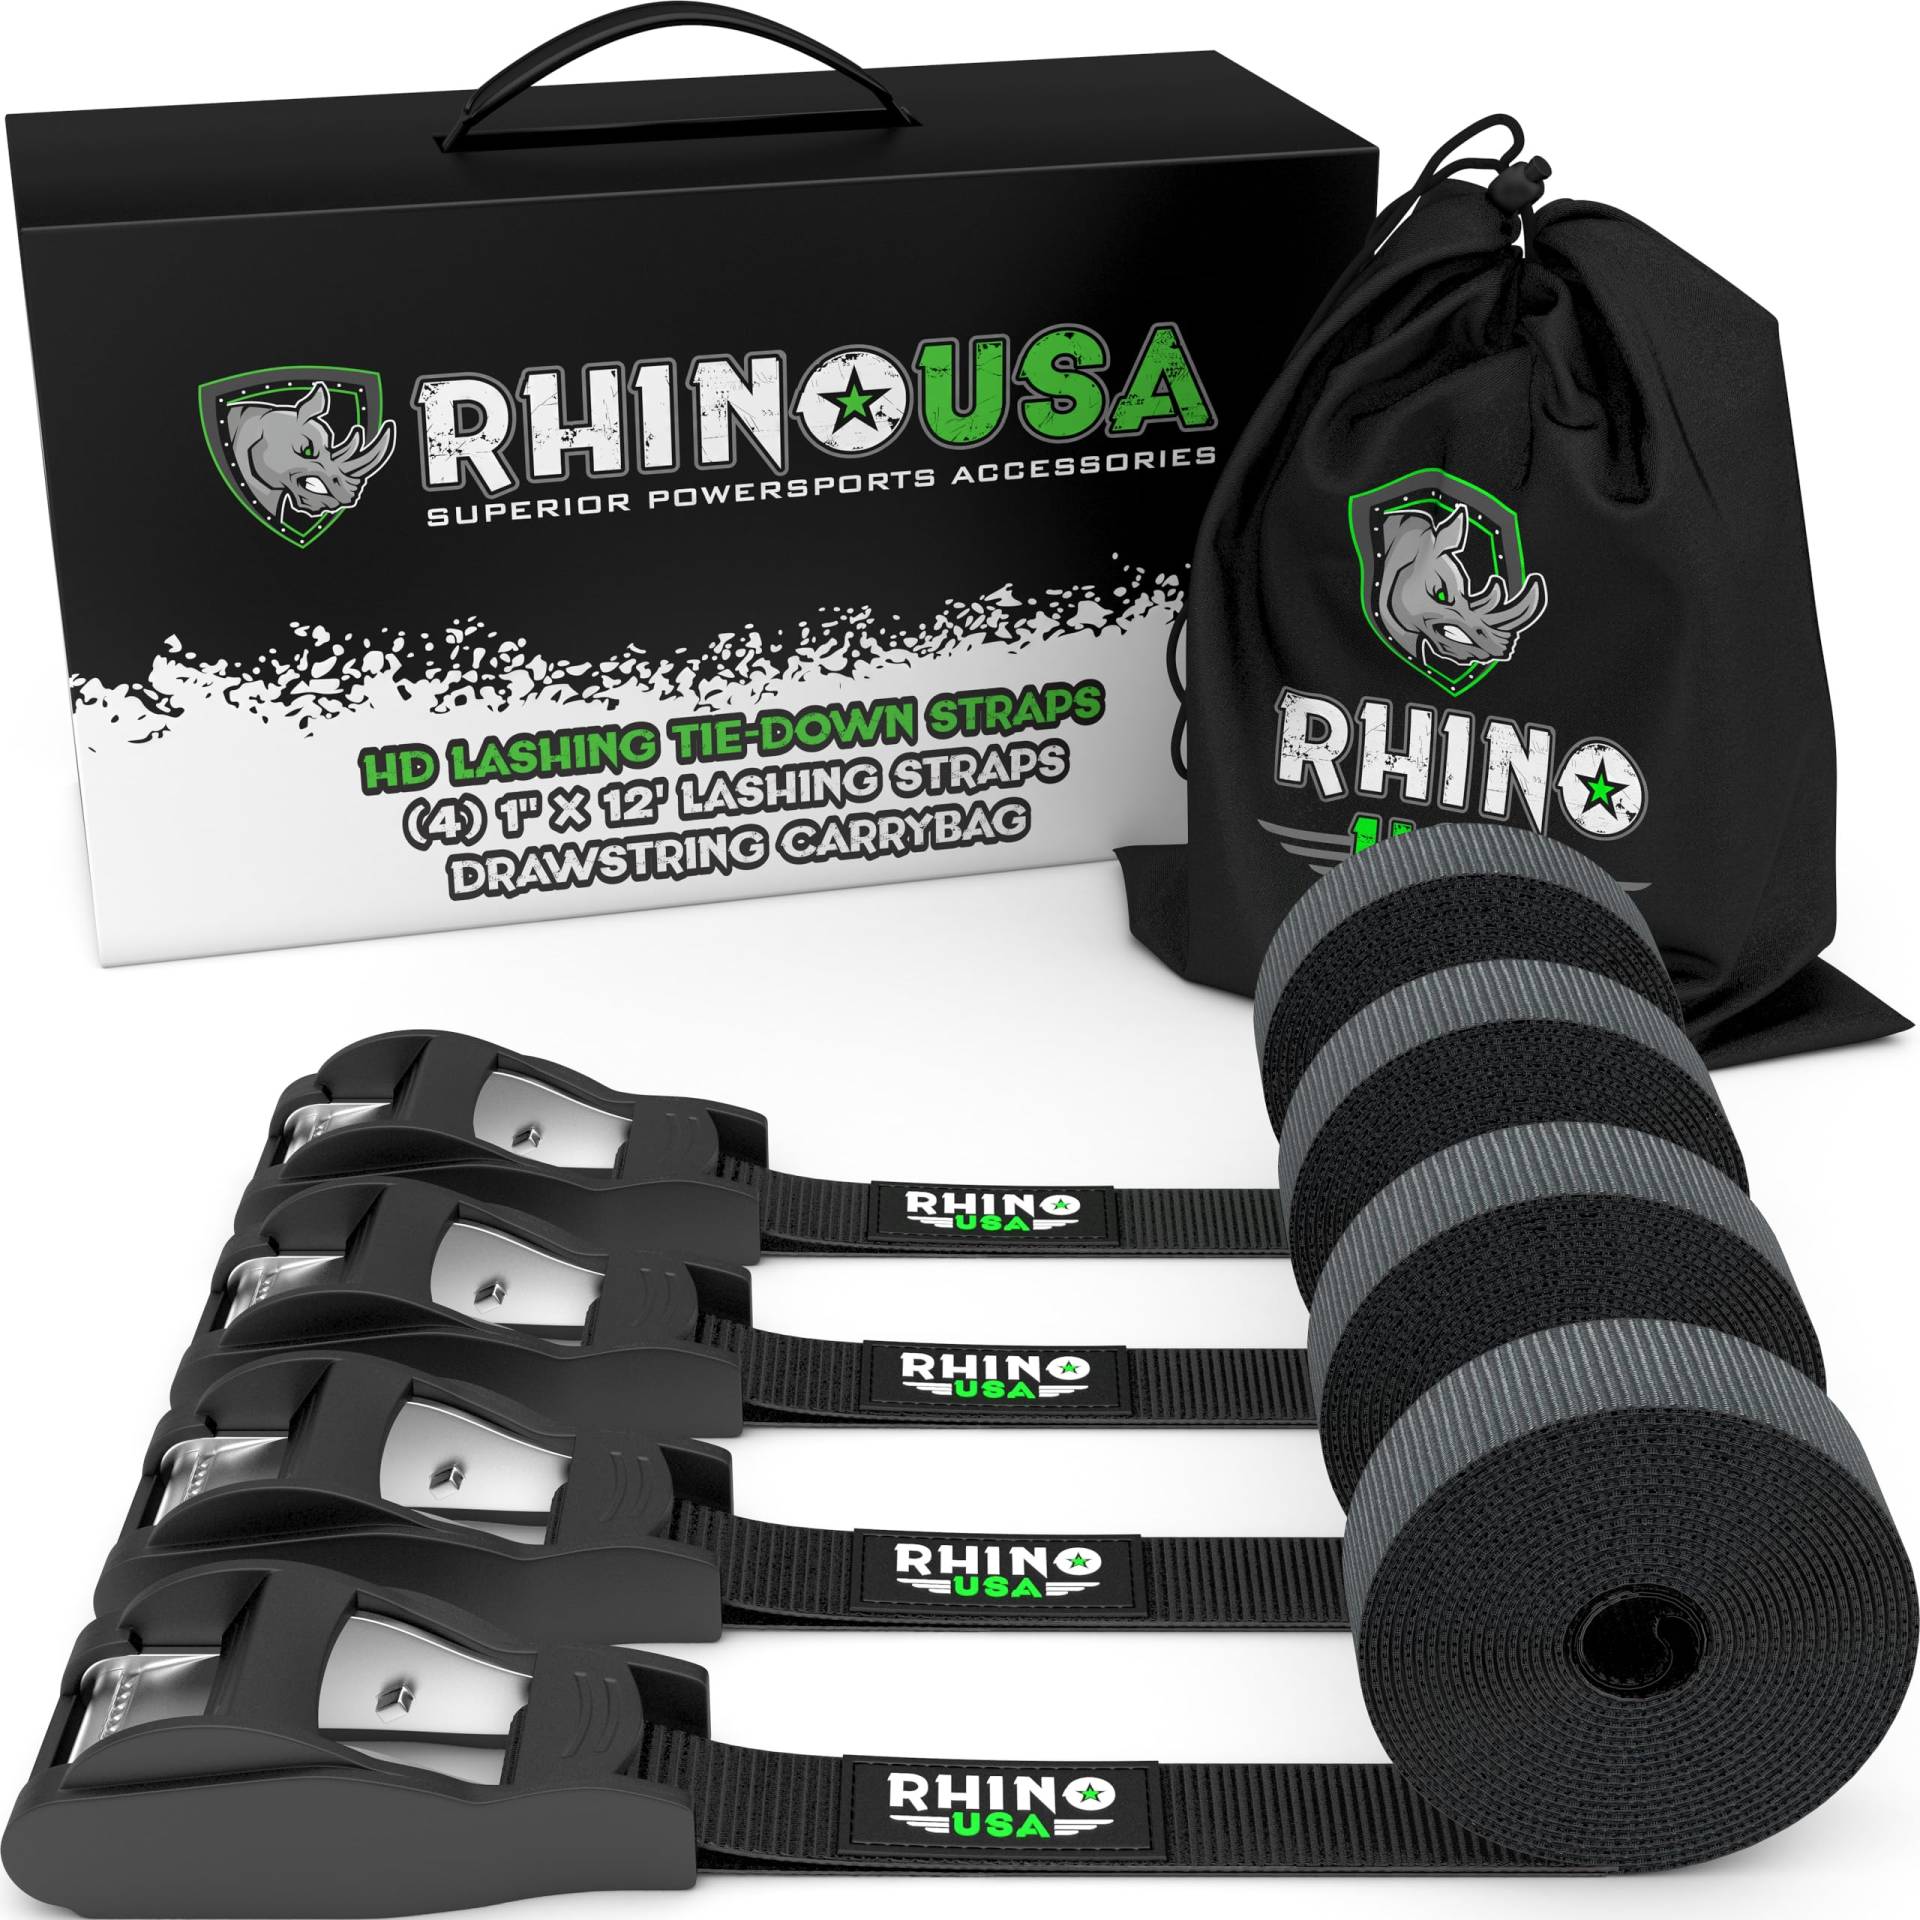 Rhino USA 4er Set Spanngurte - 500 kg Maximale Reißfestigkeit - Besteht aus 4 Robusten 2.5 cm x 3.6 m Spanngurte mit Klemmschloss - Befestigungsriemen zur Ladungssicherung auf dem Dachträger von Rhino USA